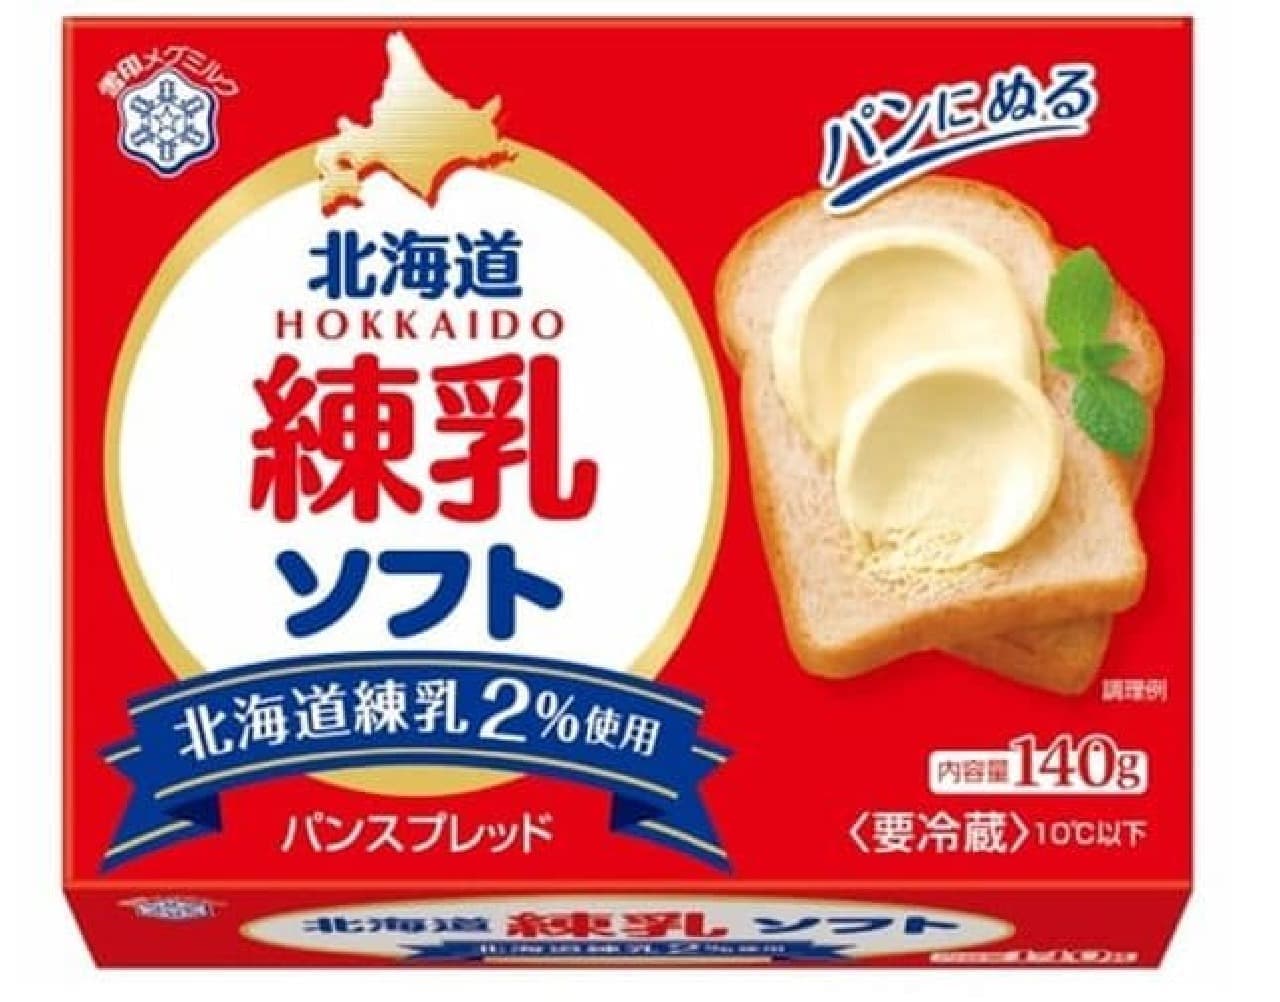 雪印メグミルク「北海道練乳 ソフト」